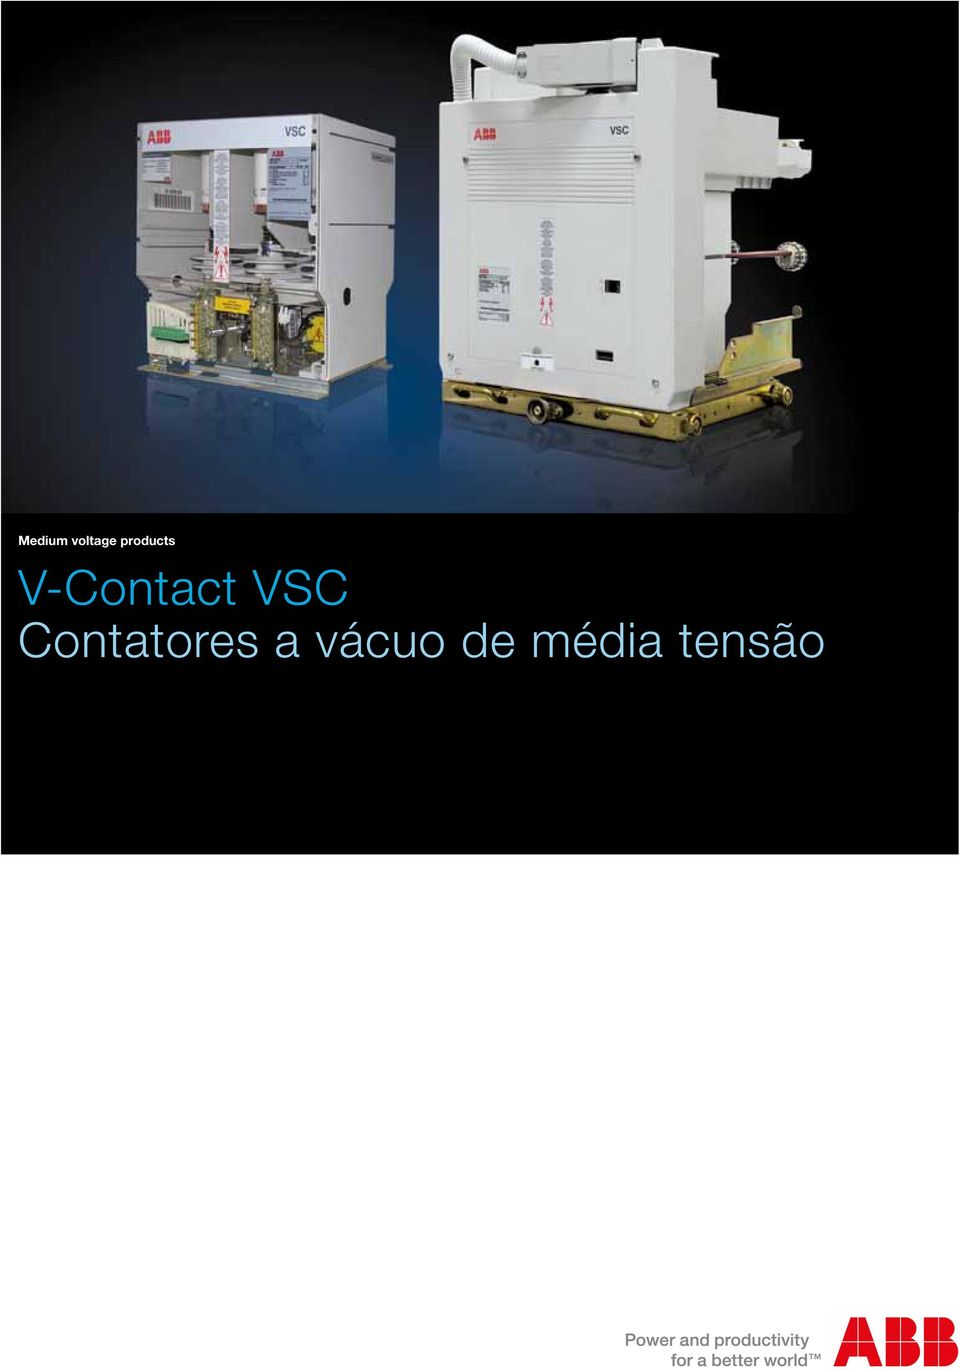 V-Contact VSC